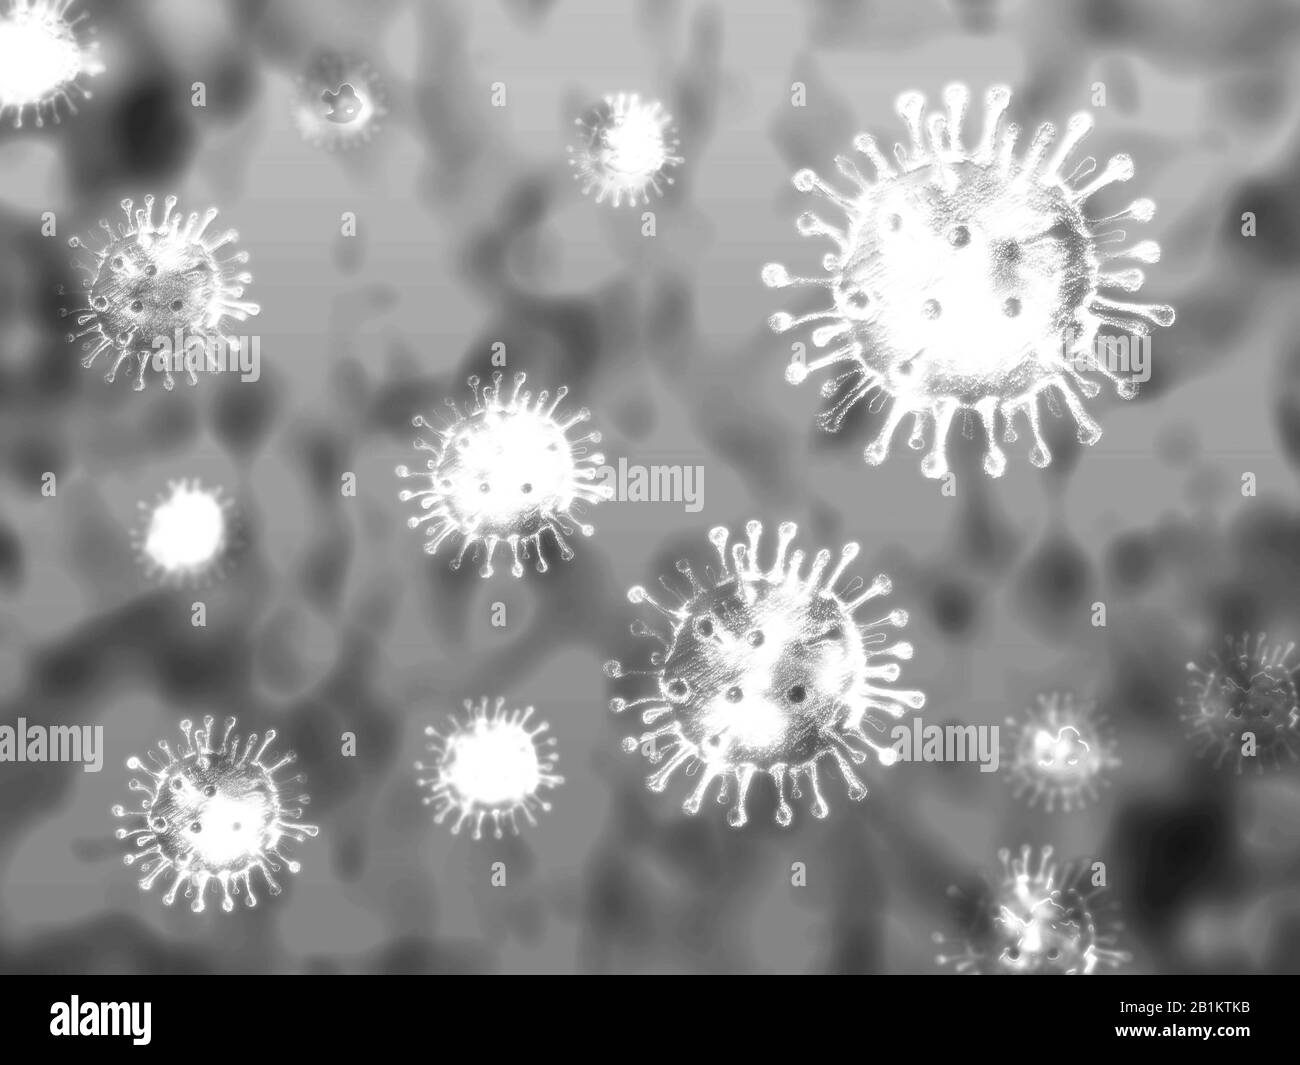 Concepto de ilustración de coronavirus. Vista microscópica del coronavirus, un patógeno que ataca el tracto respiratorio. Foto de stock